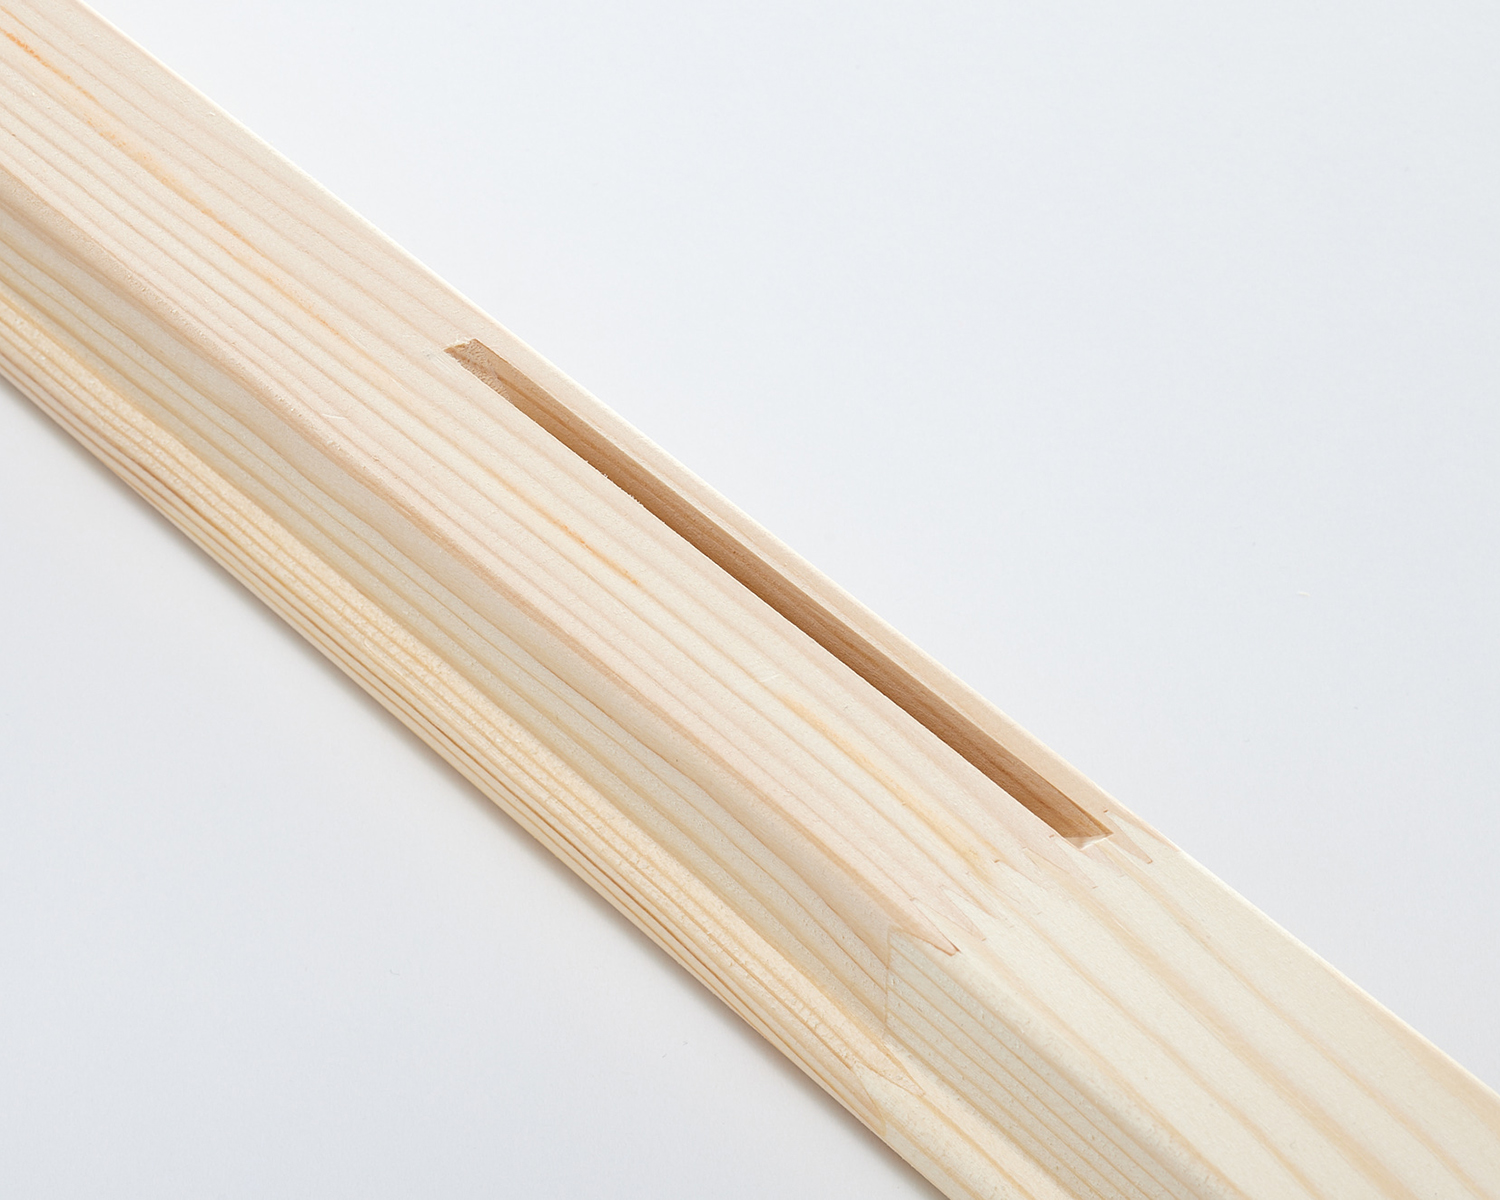 XXL Stretcher Bars - Certified Wood